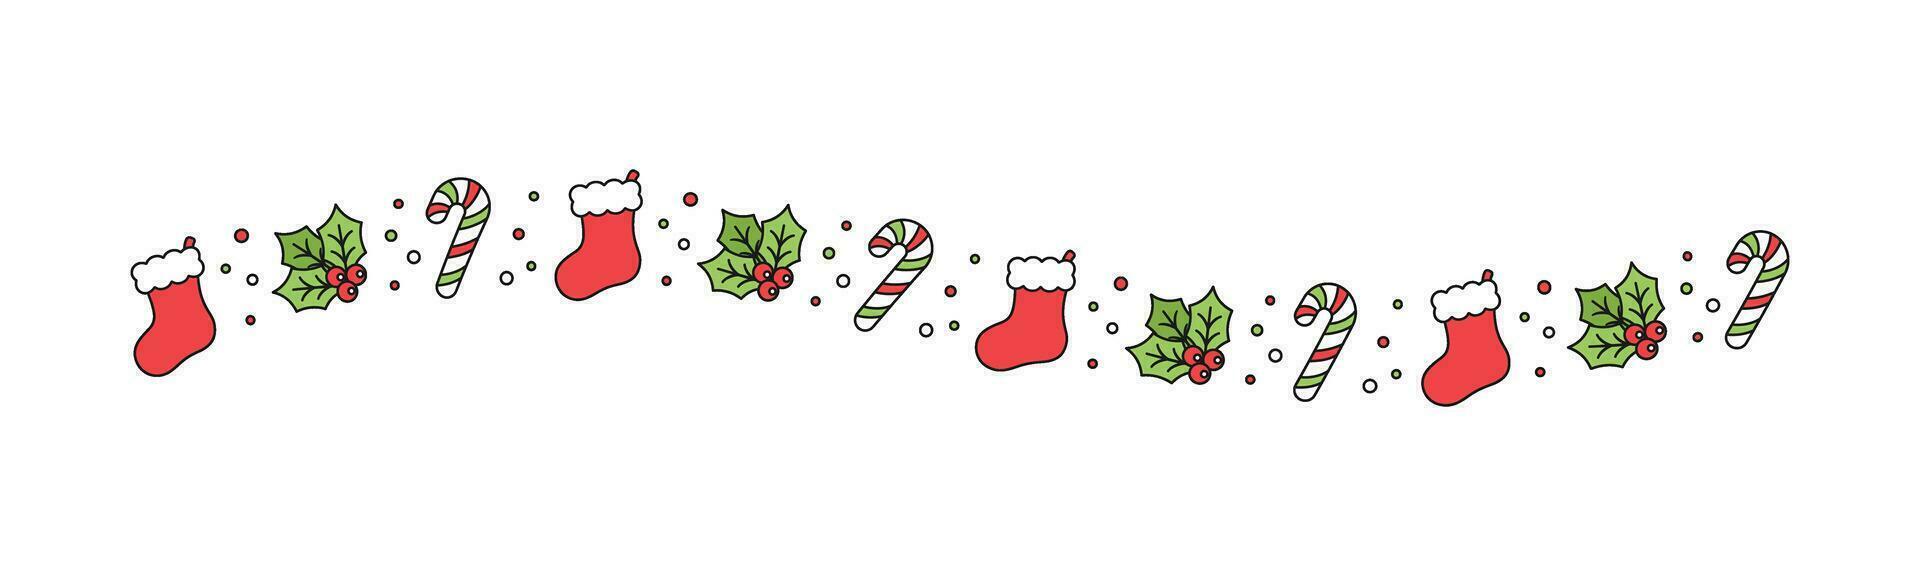 jul tema dekorativ vågig linje gräns och text delare, jul strumpa, godis sockerrör och mistel mönster. vektor illustration.